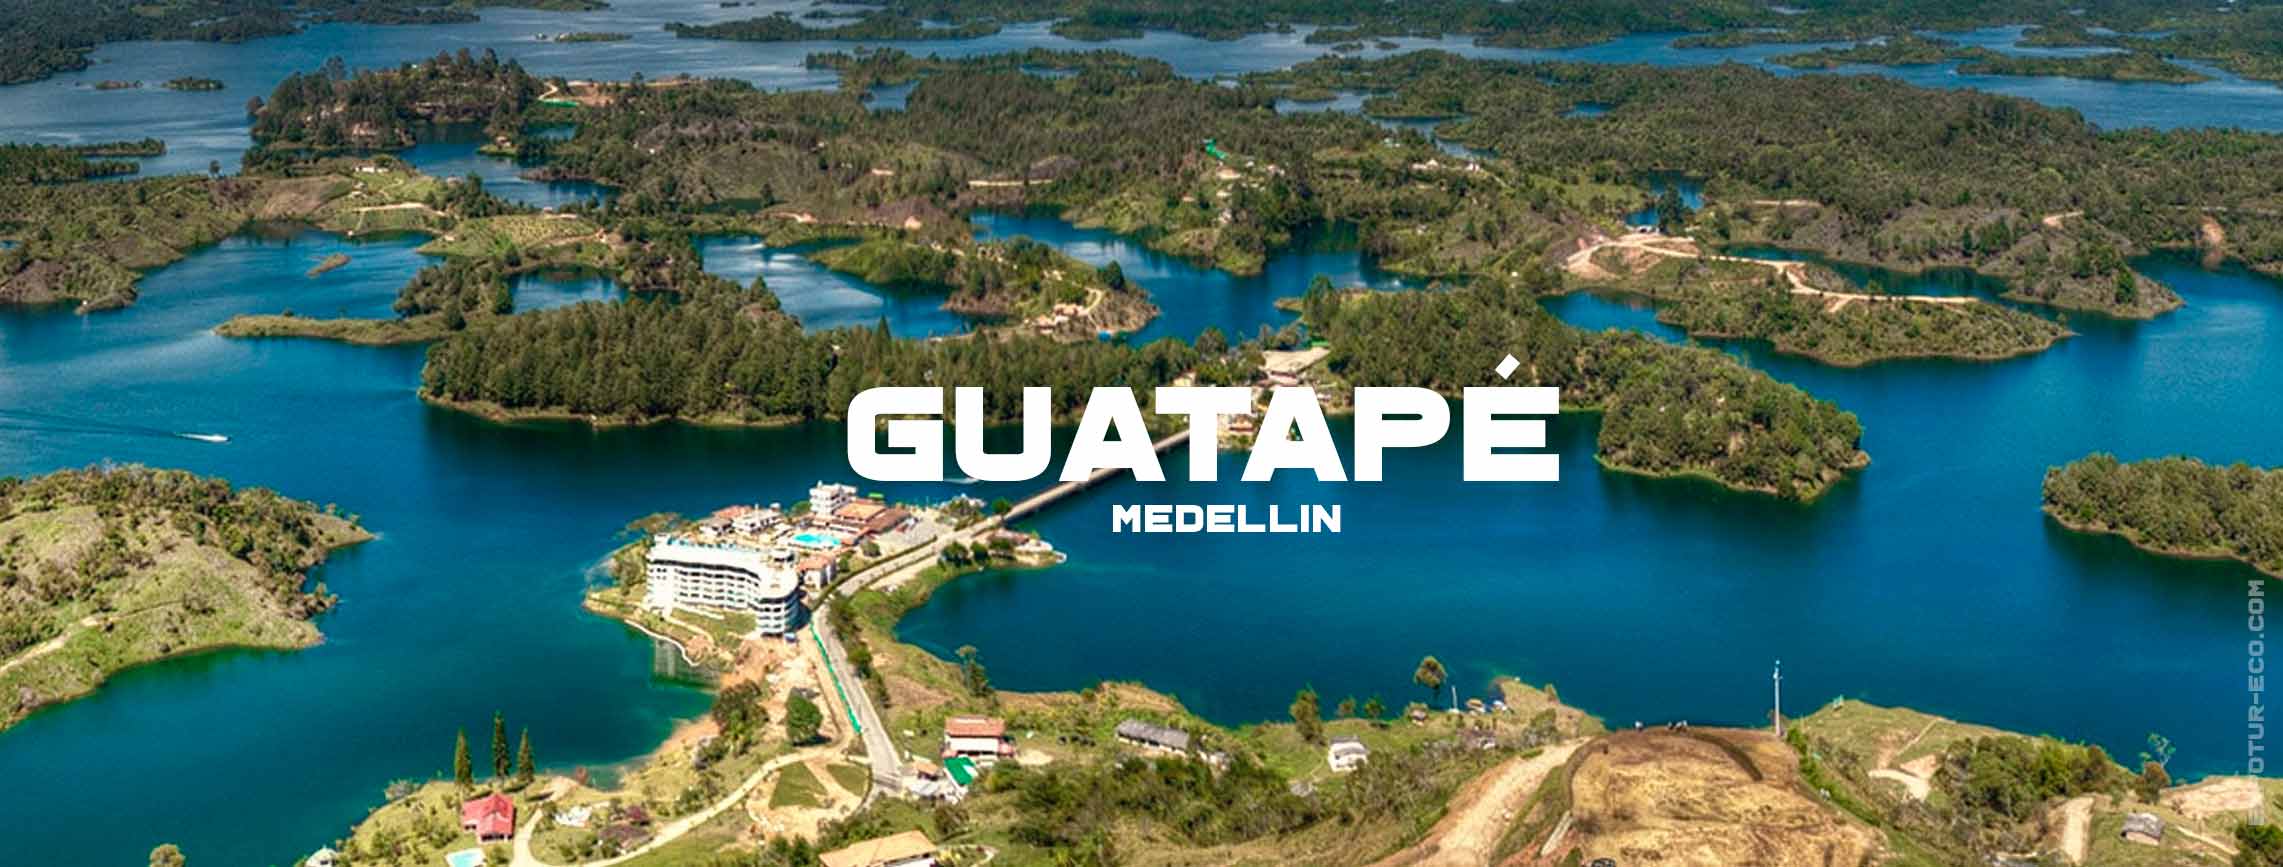 medellin-guatape-blog-semana-santa-expotur-lugar-turistico-colombia